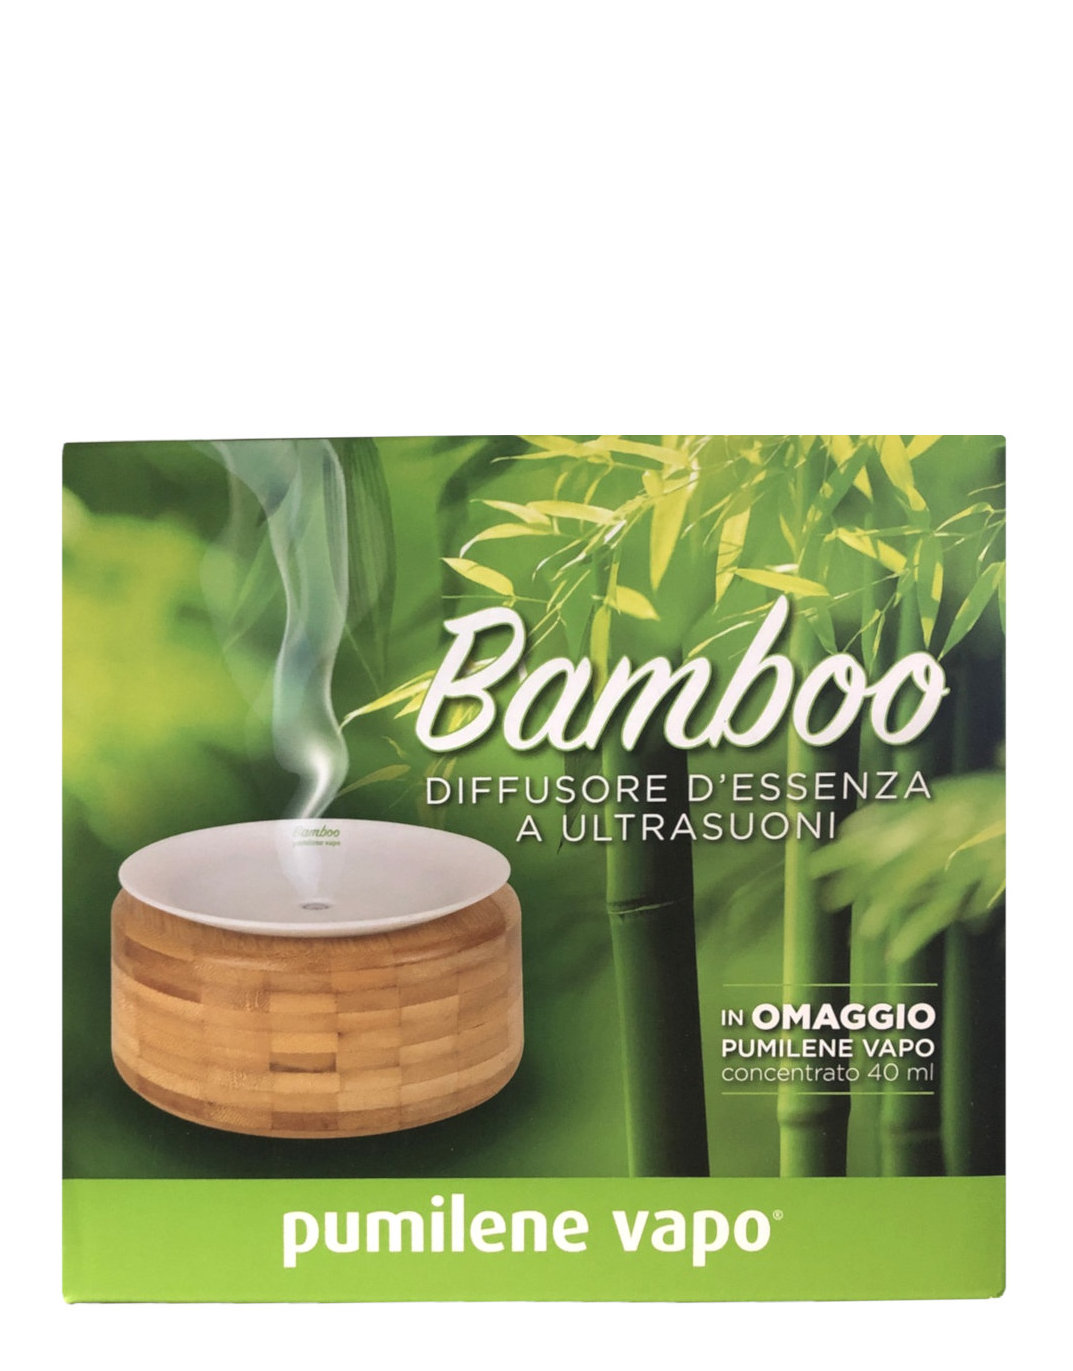 Bamboo Diffusore D'essenza a UltraSuoni di Pumilene vapo, 1